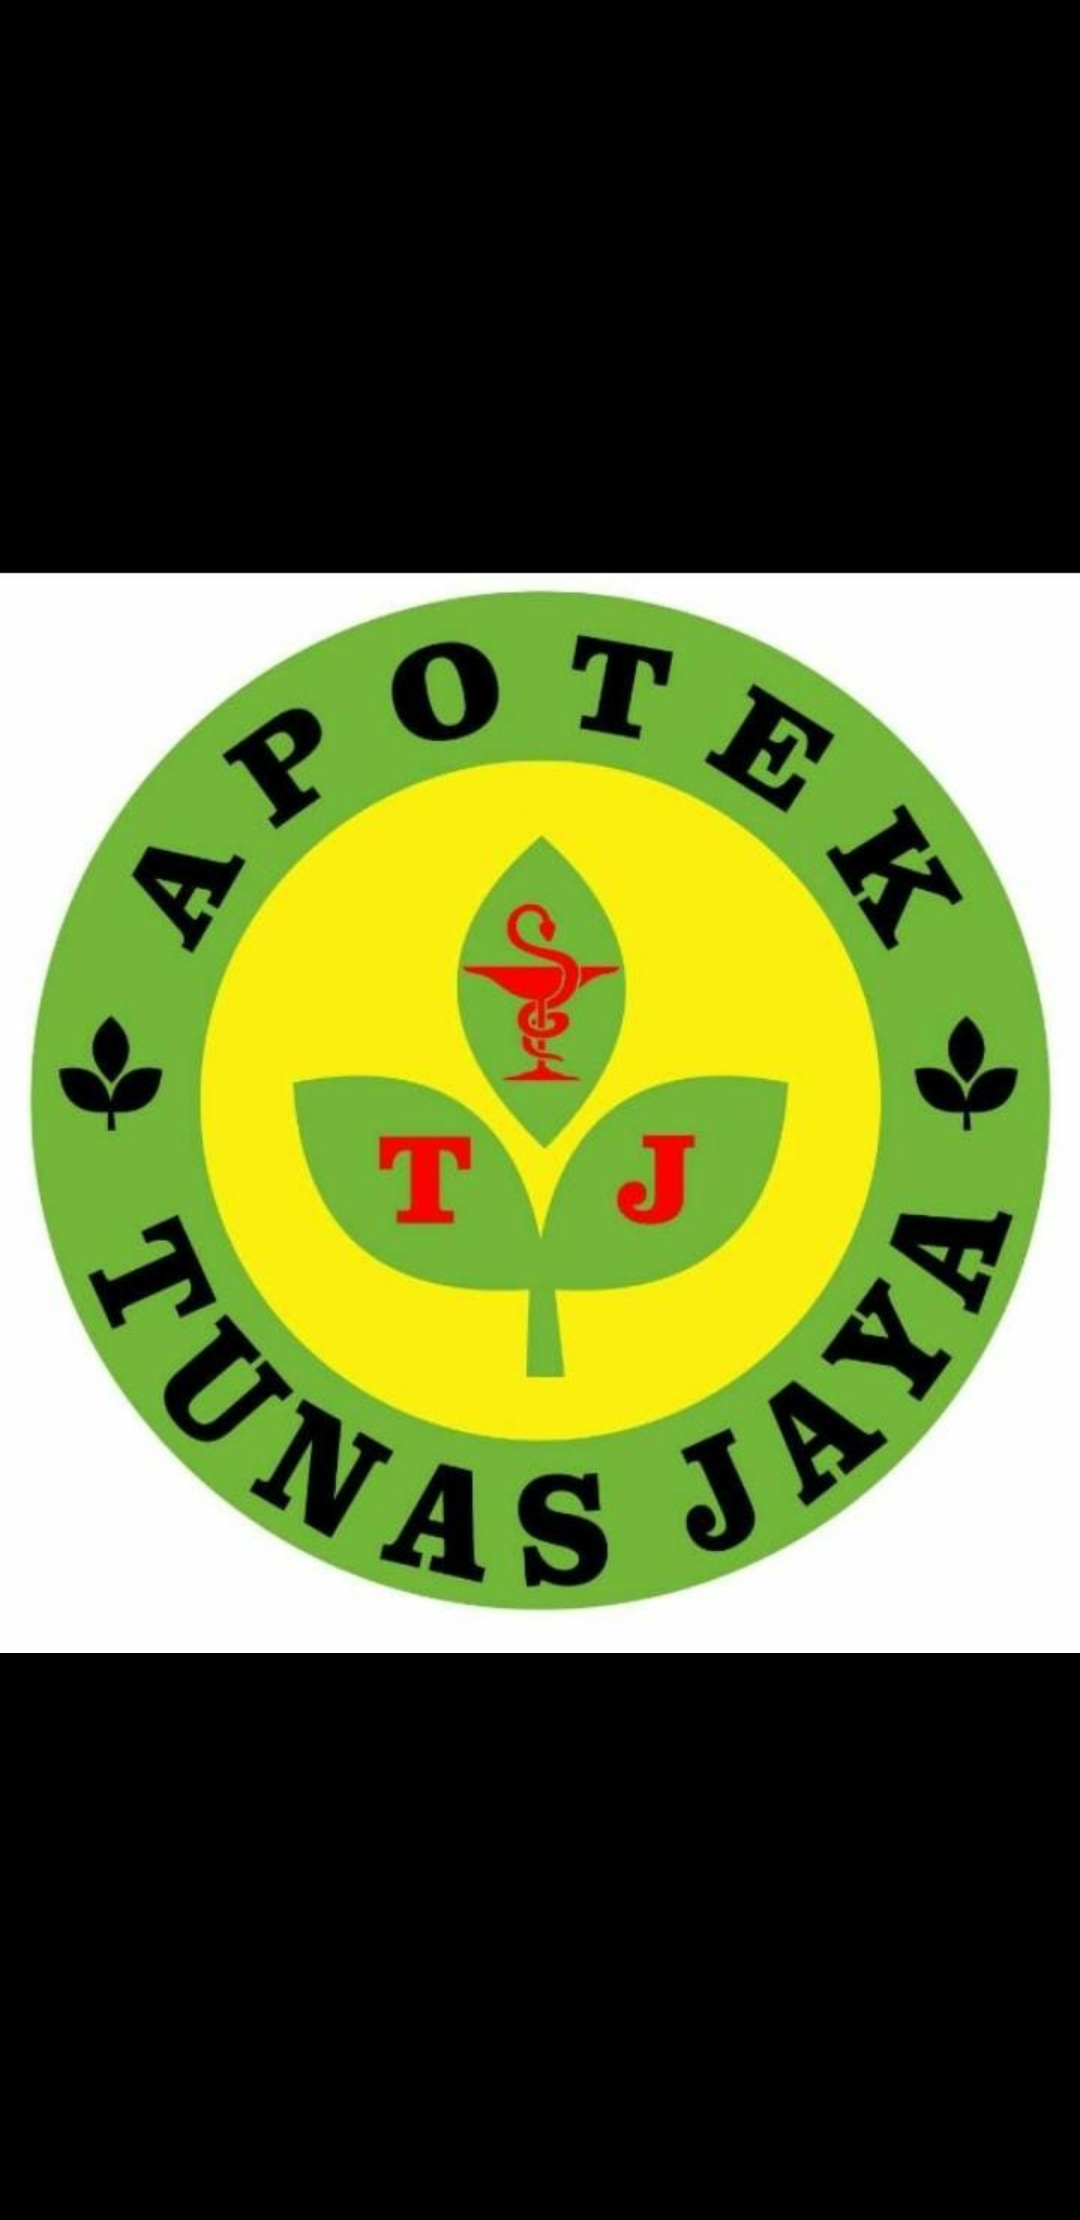 Apotek Tunas Jaya